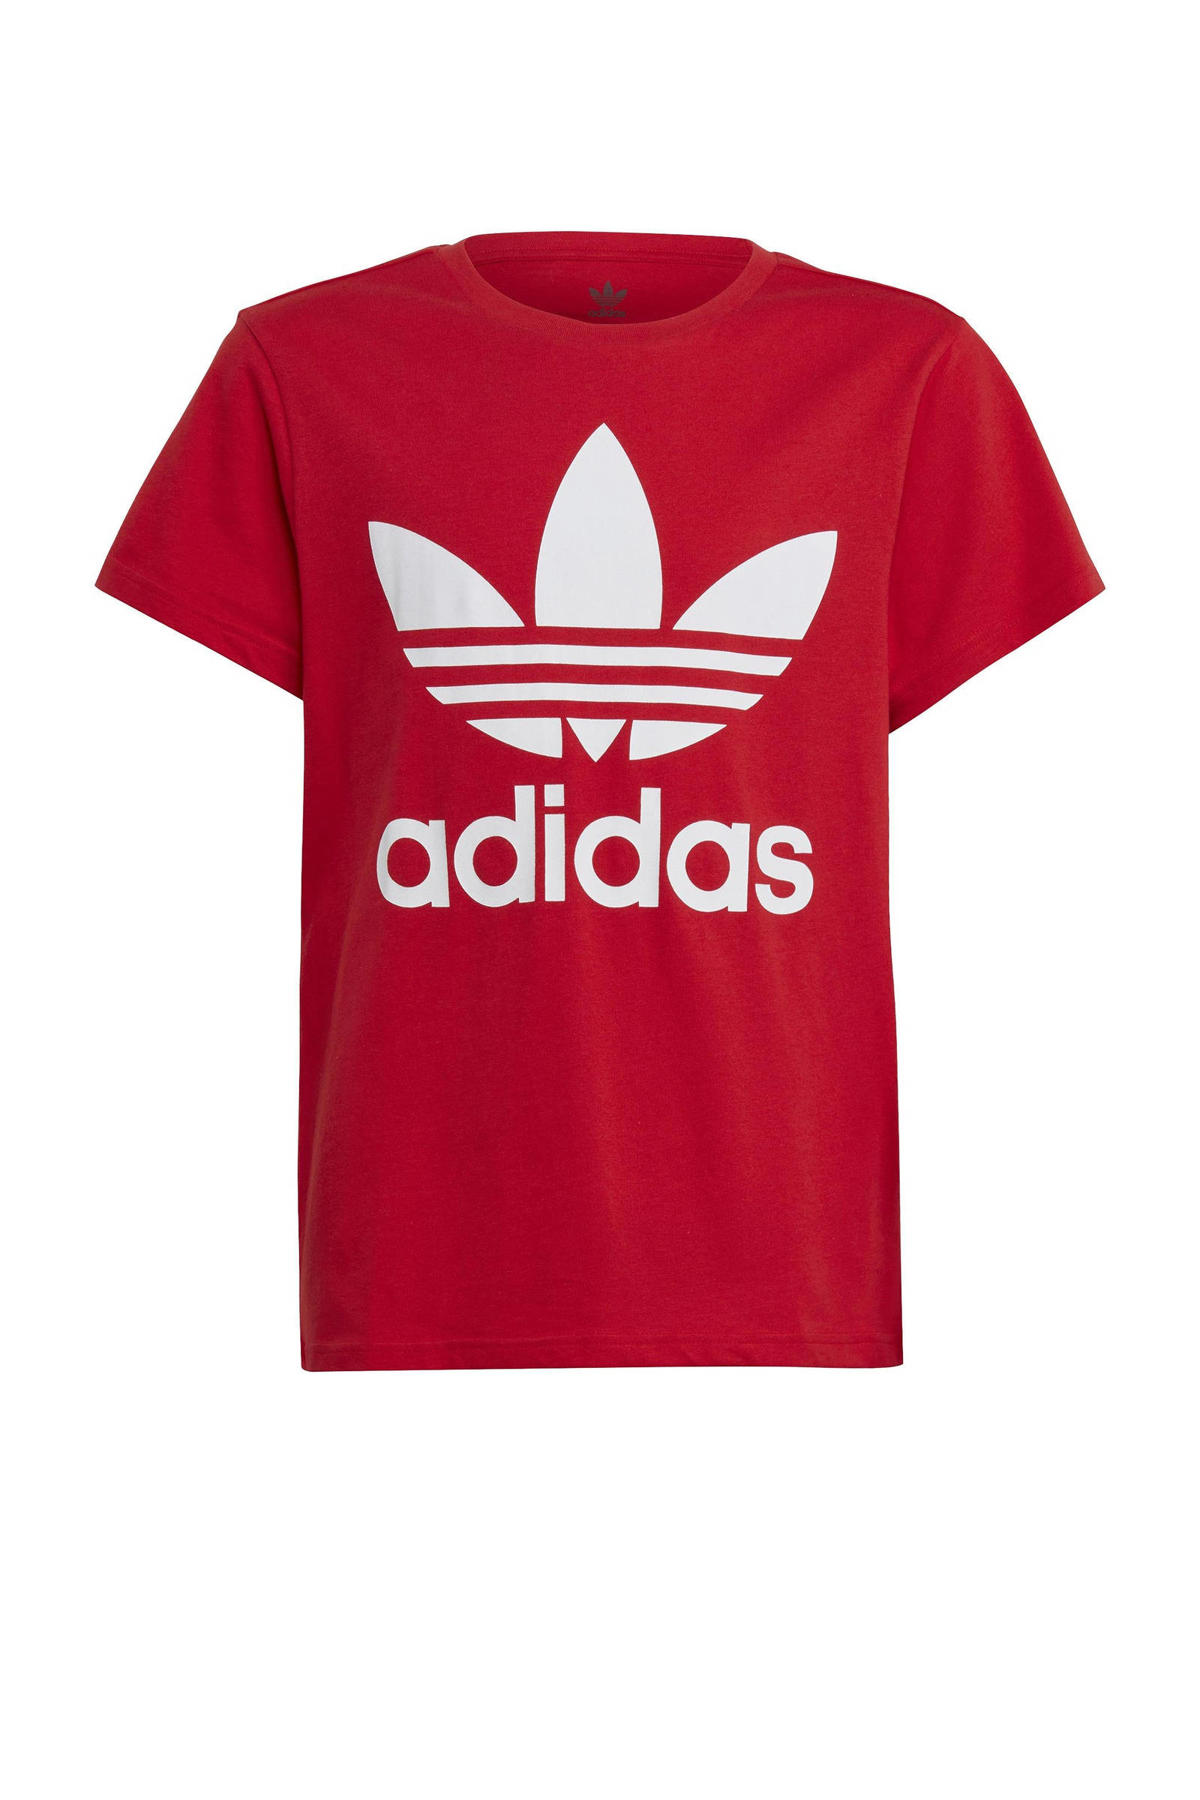 hoogtepunt Onweersbui erwt adidas Originals T-shirt rood/wit | wehkamp